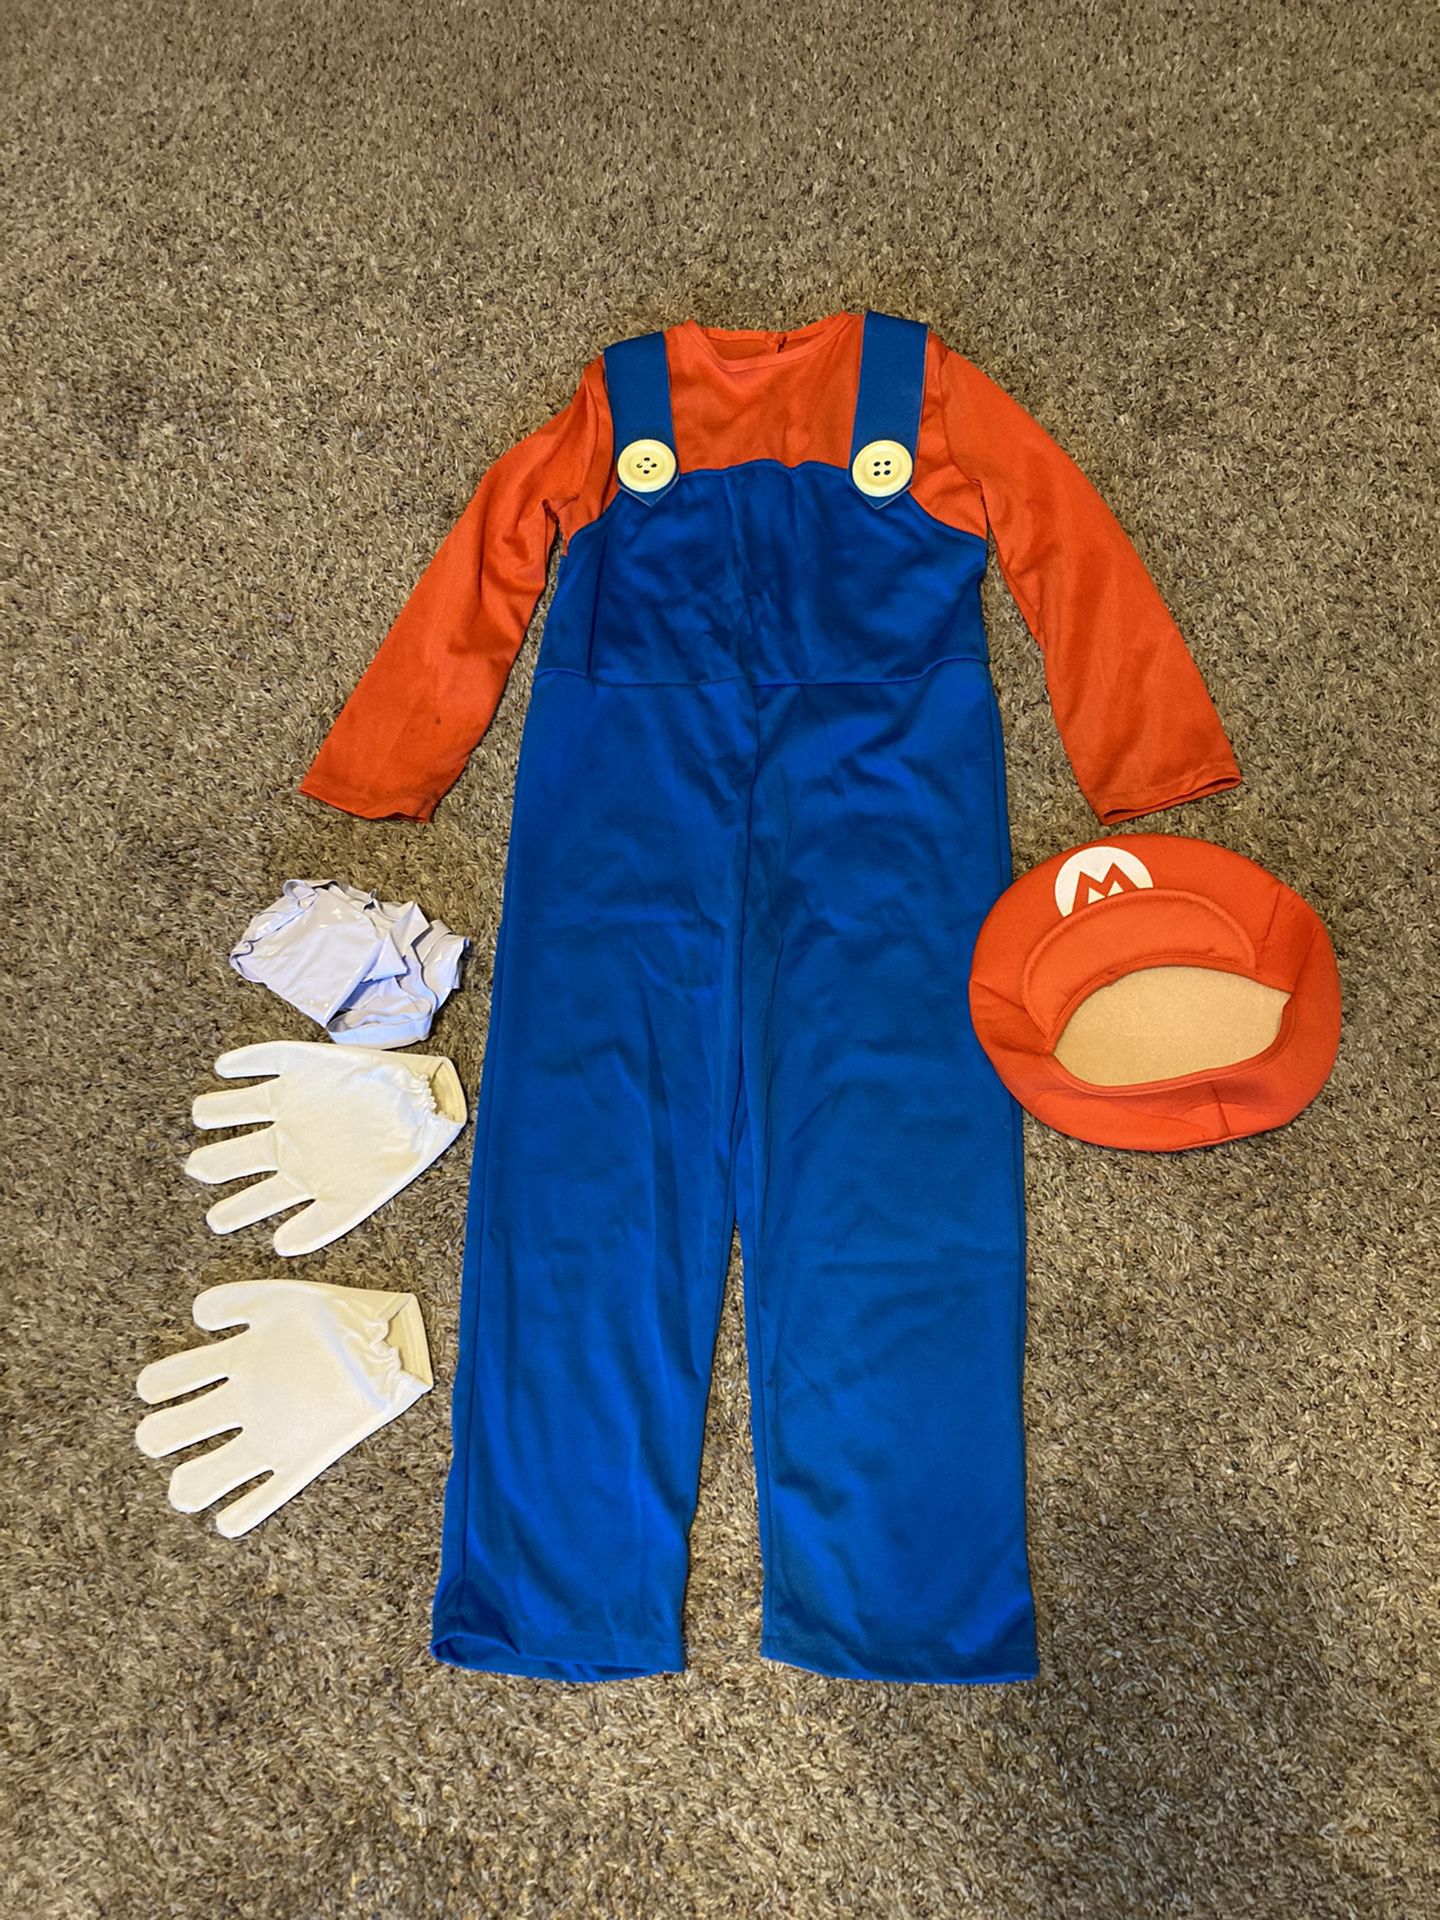 Mario Costume Kids Size Medium